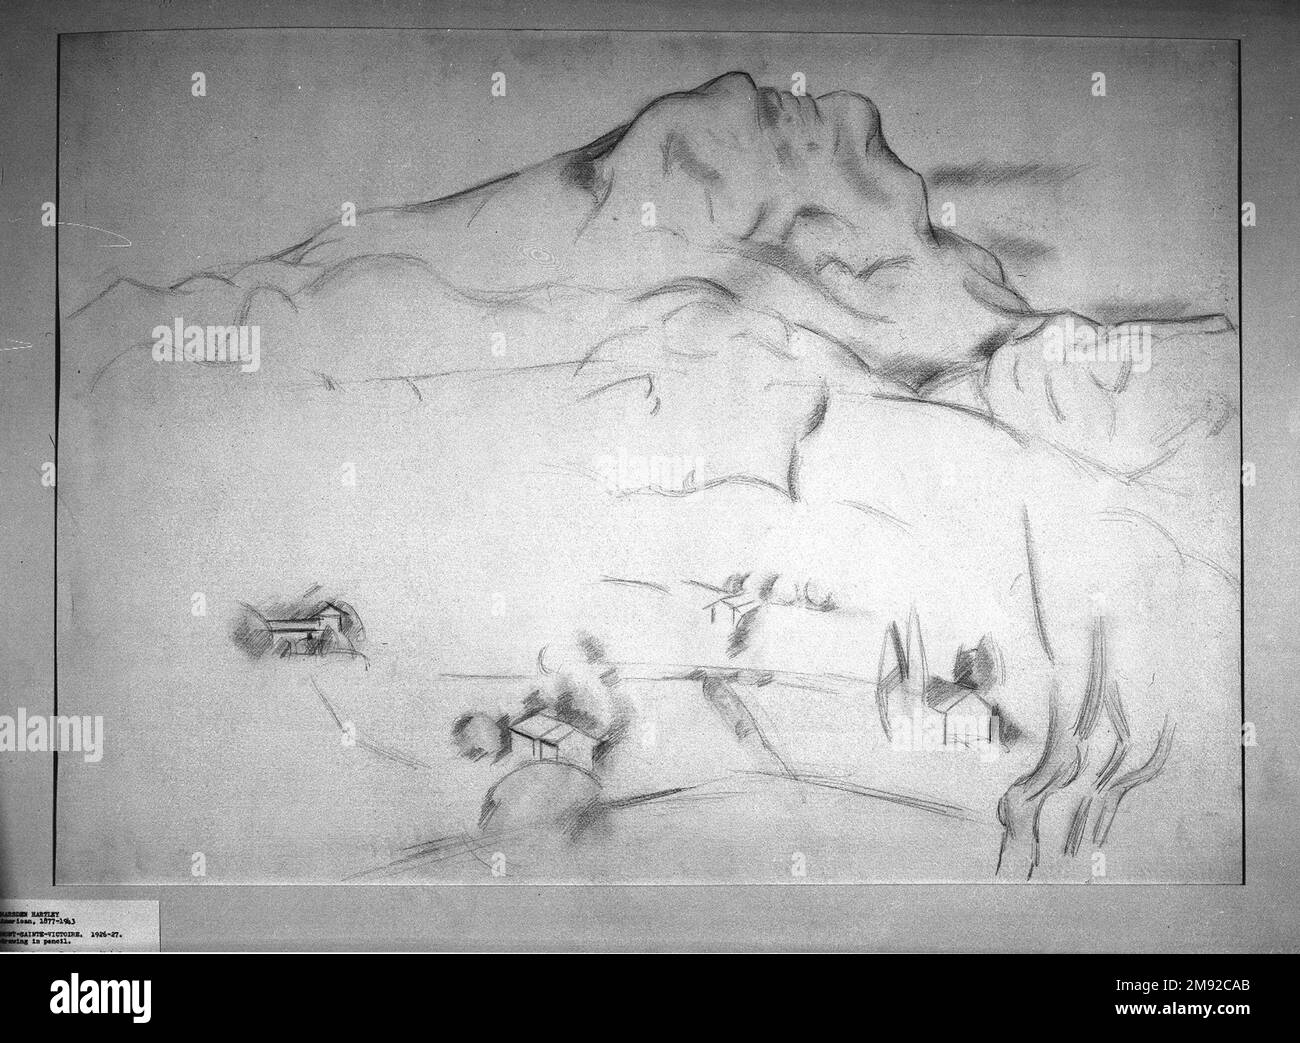 Mont Sainte-Victoire Marsden Hartley (americano, 1877-1943). Mont Sainte-Victoire, 1926-1927. Grafite su carta spessa, ruvida, color crema, foglio: 22 5/8 x 31 3/16 poll. (57,5 x 79,2 cm). In omaggio a Paul Cézanne, il modernista Marsden Hartley trascorse un periodo vivendo e lavorando nel paesaggio preferito dell’artista francese, Aix-en-Provence, nel sud della Francia. Come Cézanne aveva fatto, Hartley ha raffigurato ripetutamente il profilo distintivo del Mont Sainte-Victoire. In questo disegno di ricambio, catturò la monumentalità e i contorni scultorei della montagna usando un piatto Foto Stock